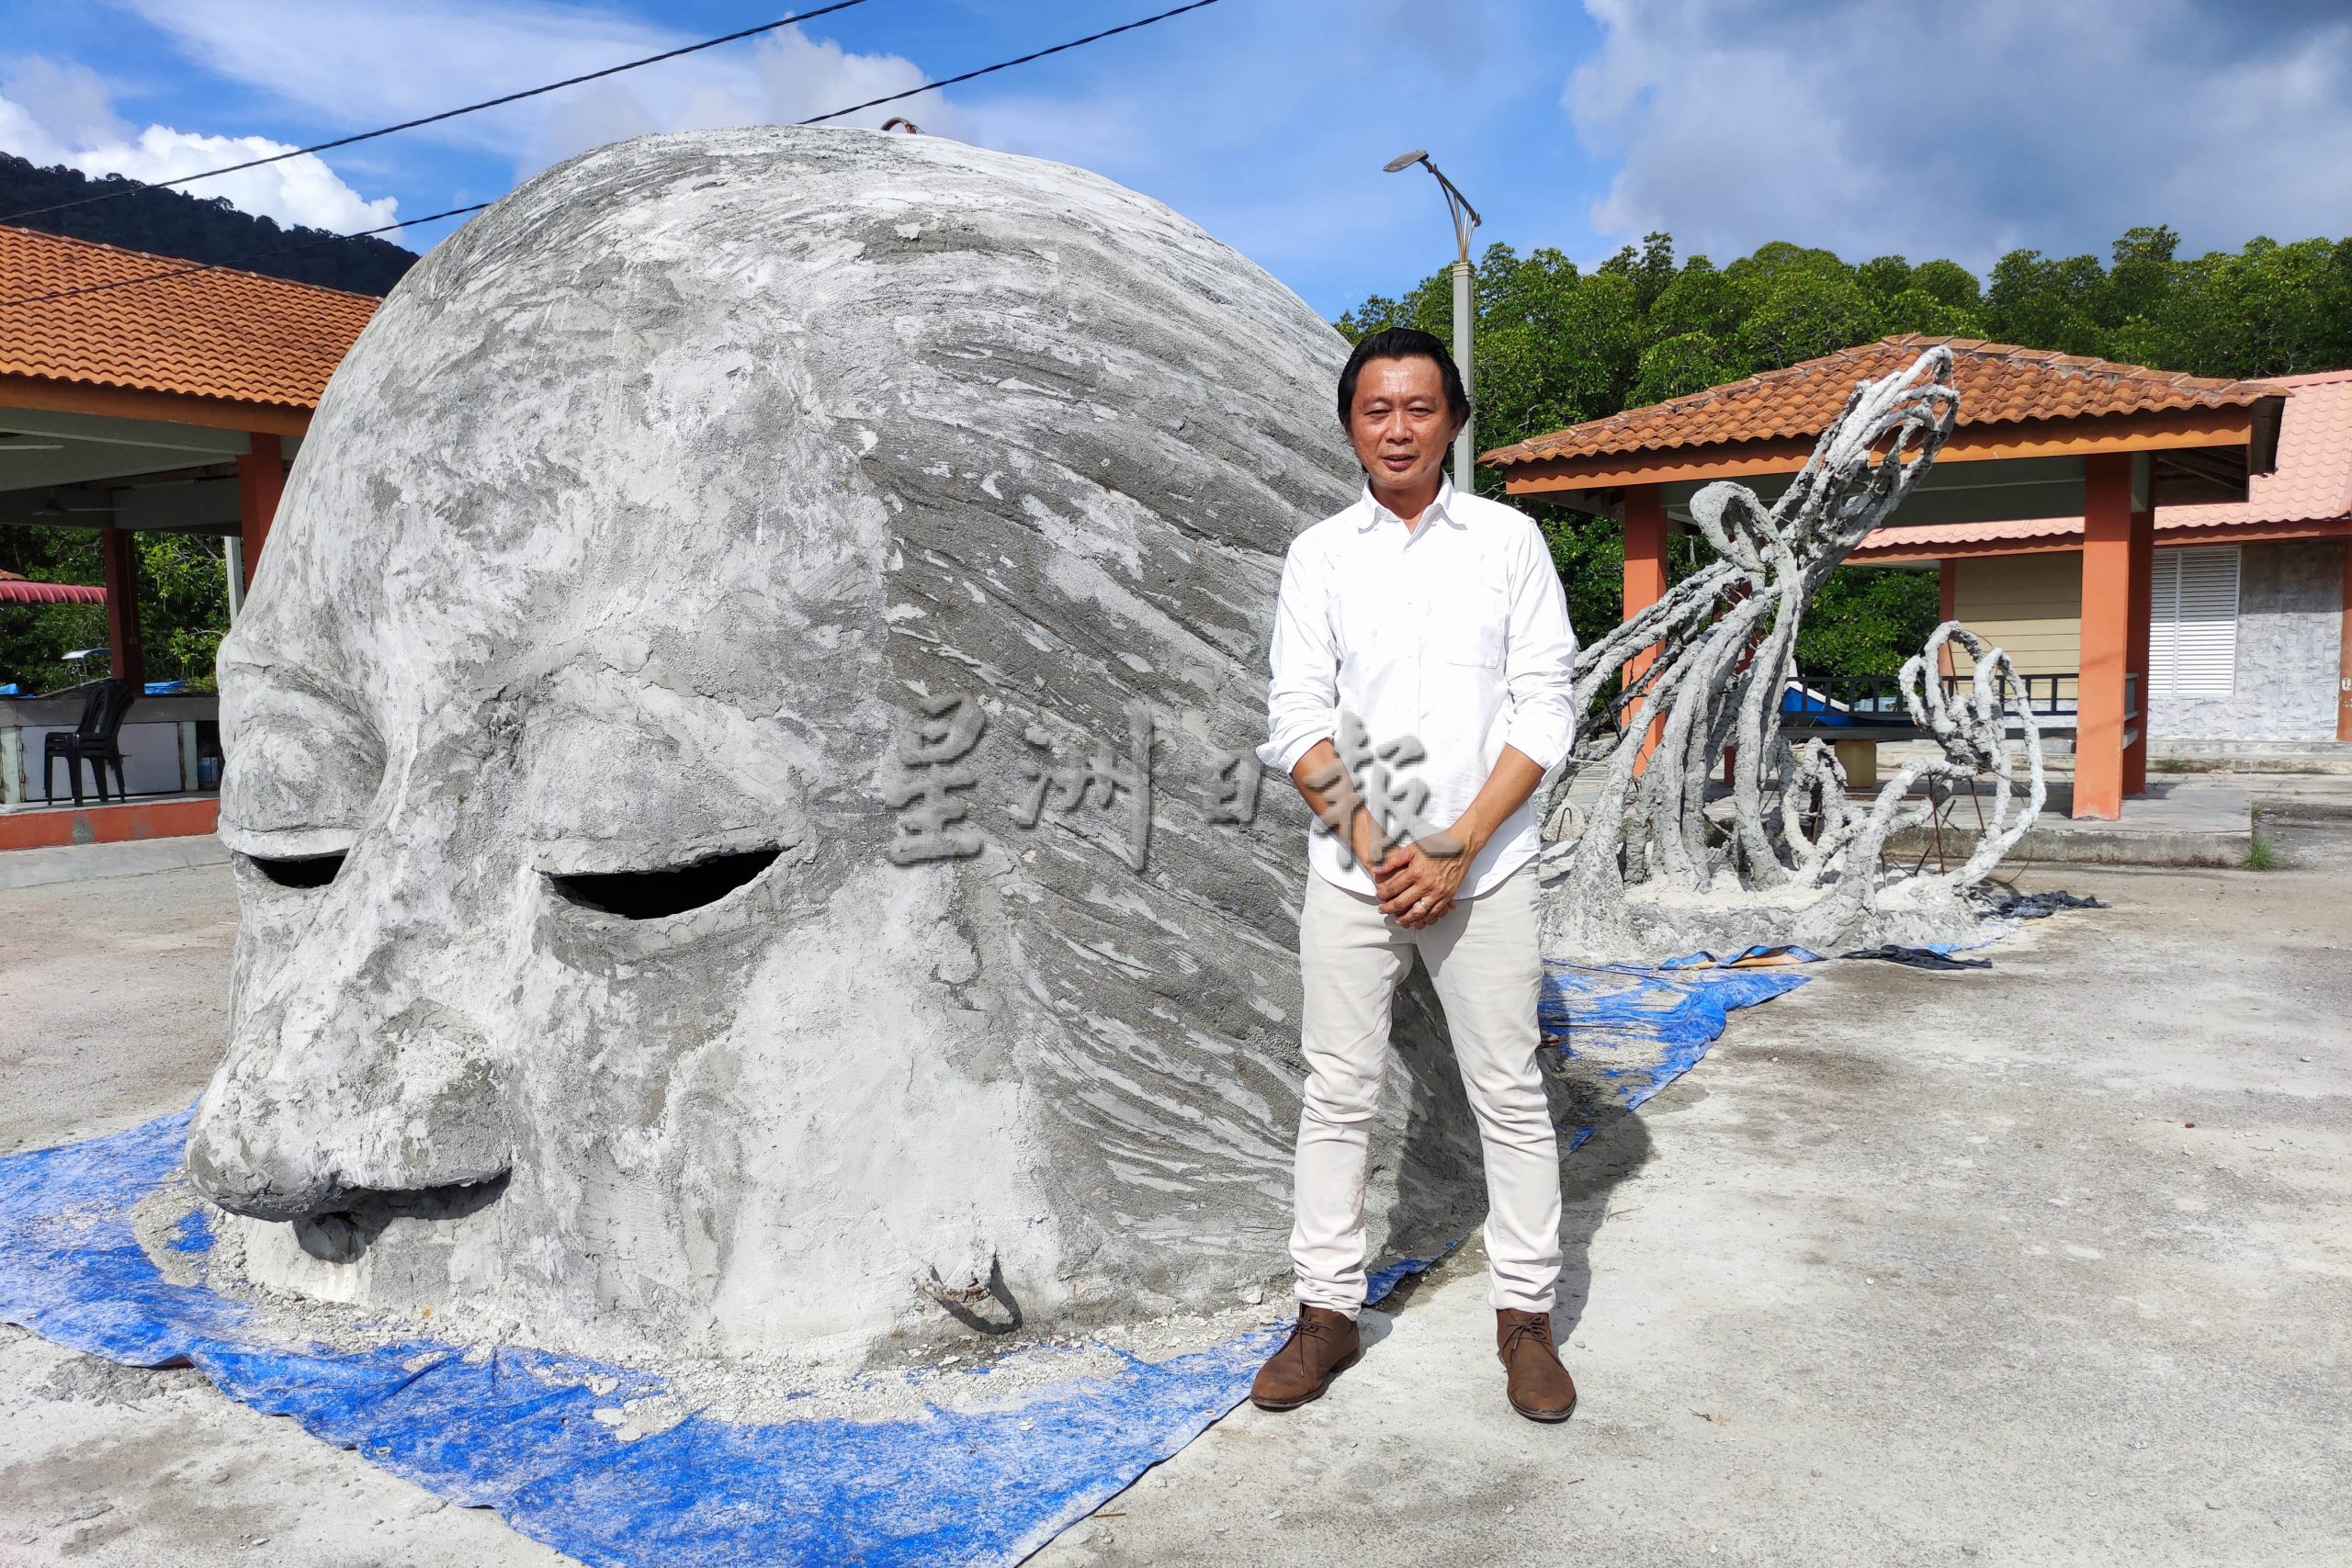 （全国版）结合艺术创作及保护海洋生态概念 浮罗交怡将有海底雕塑